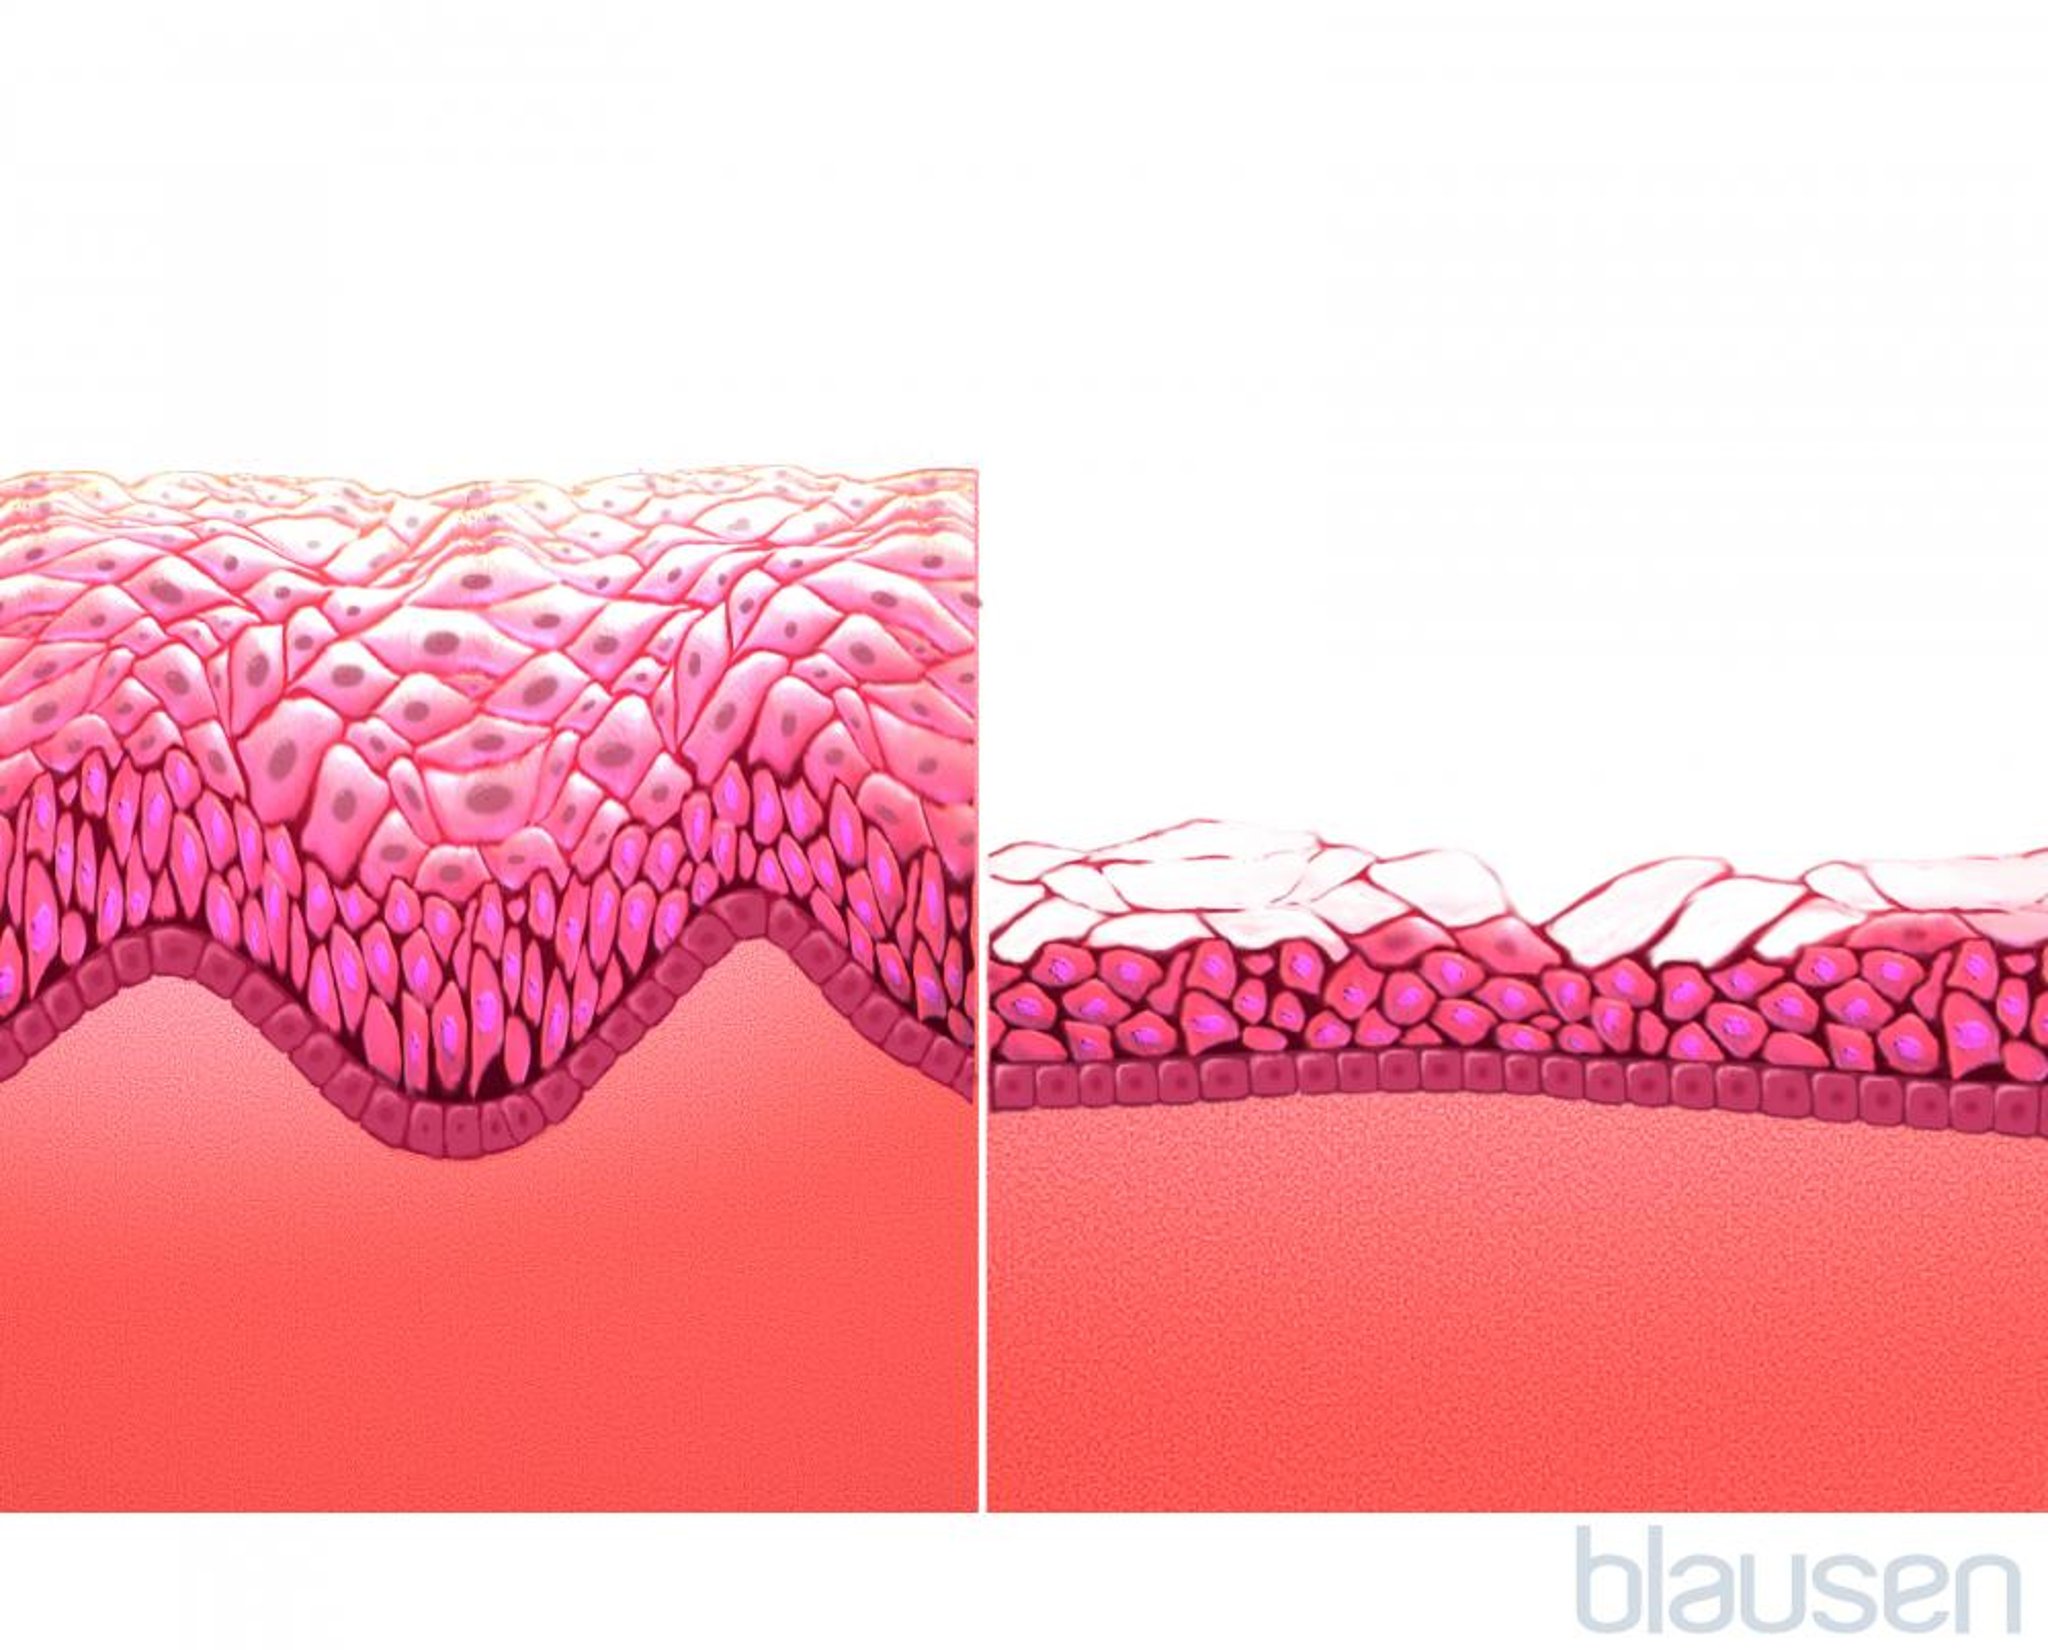 Mucosa vaginale (prima e dopo la menopausa)